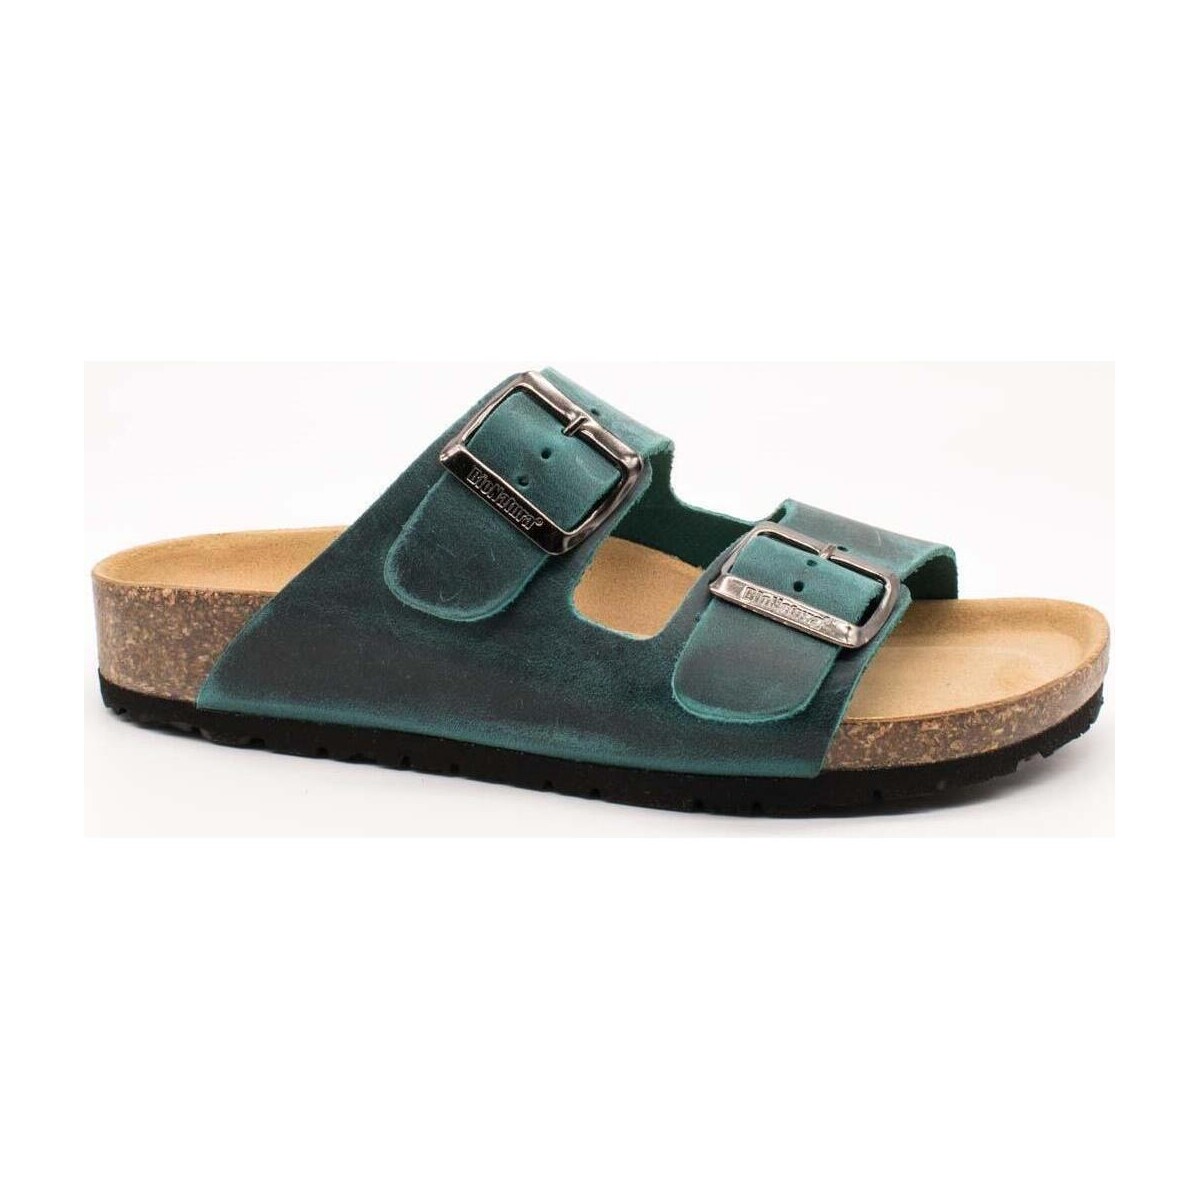 Schuhe Damen Sandalen / Sandaletten Bionatura  Grün